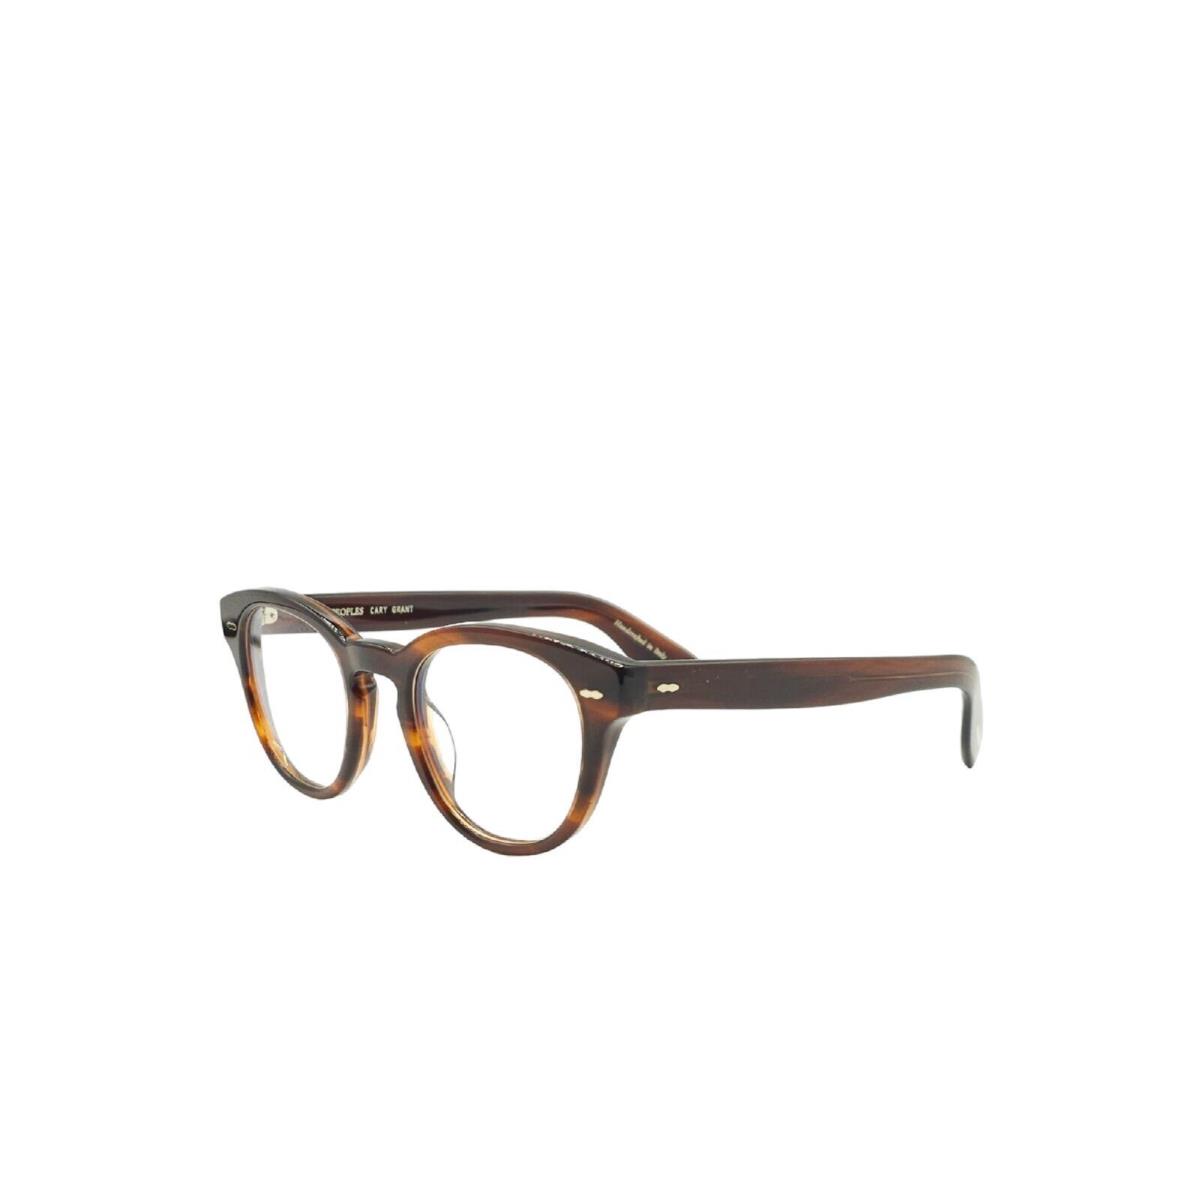 Oliver Peoples OV5413U Cary Grant Eyeglasses Tortoise 1679 Size 48